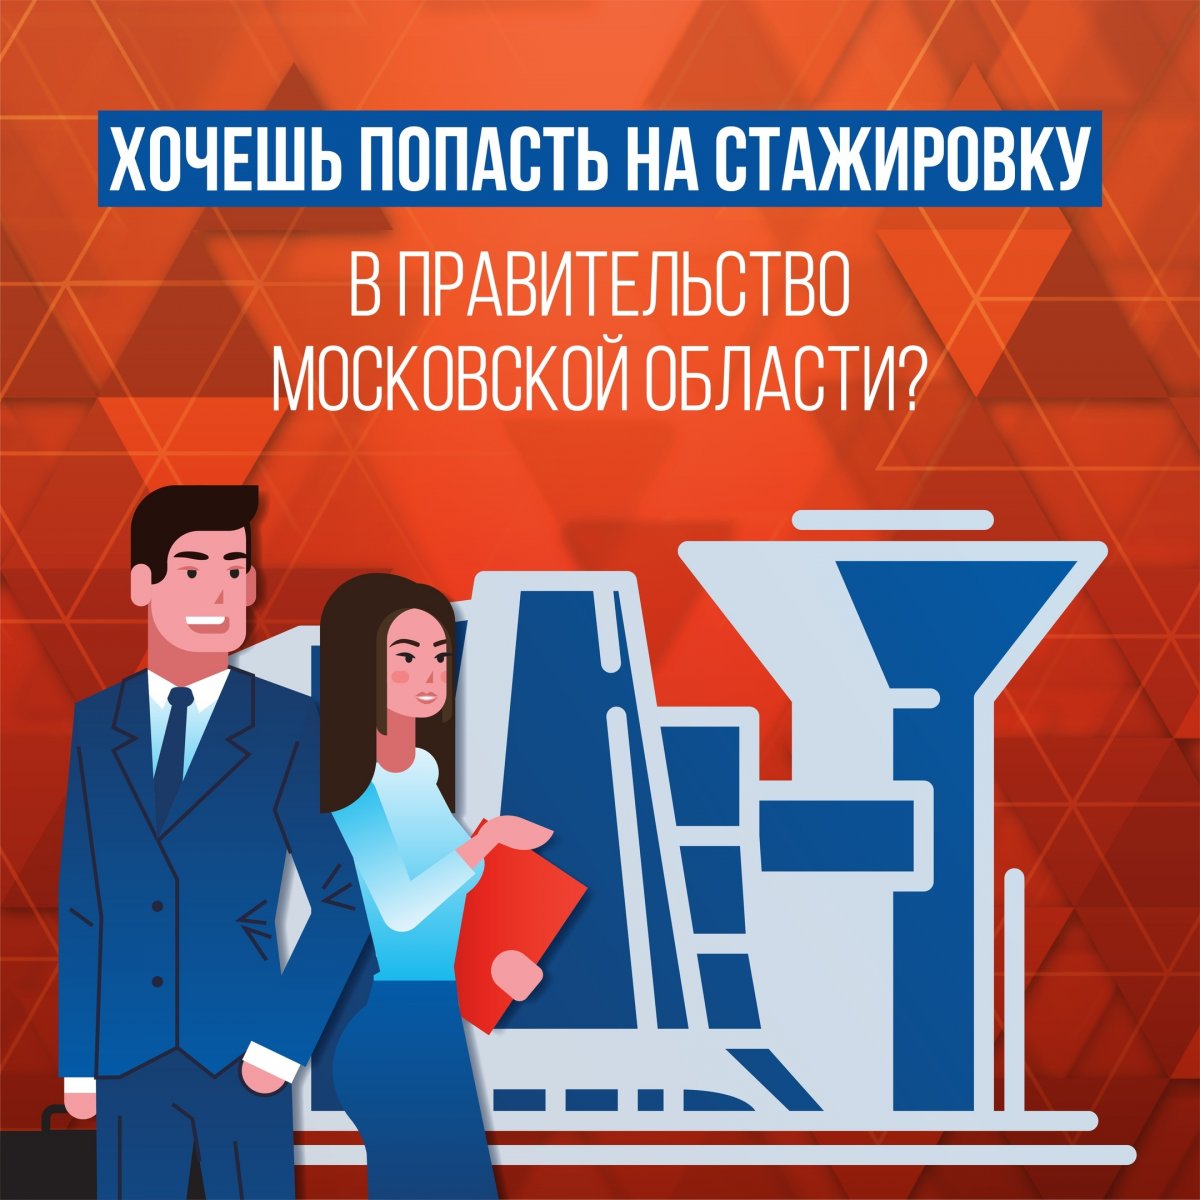 🇷🇺 Приглашаем на стажировку в Правительство Московской области❗